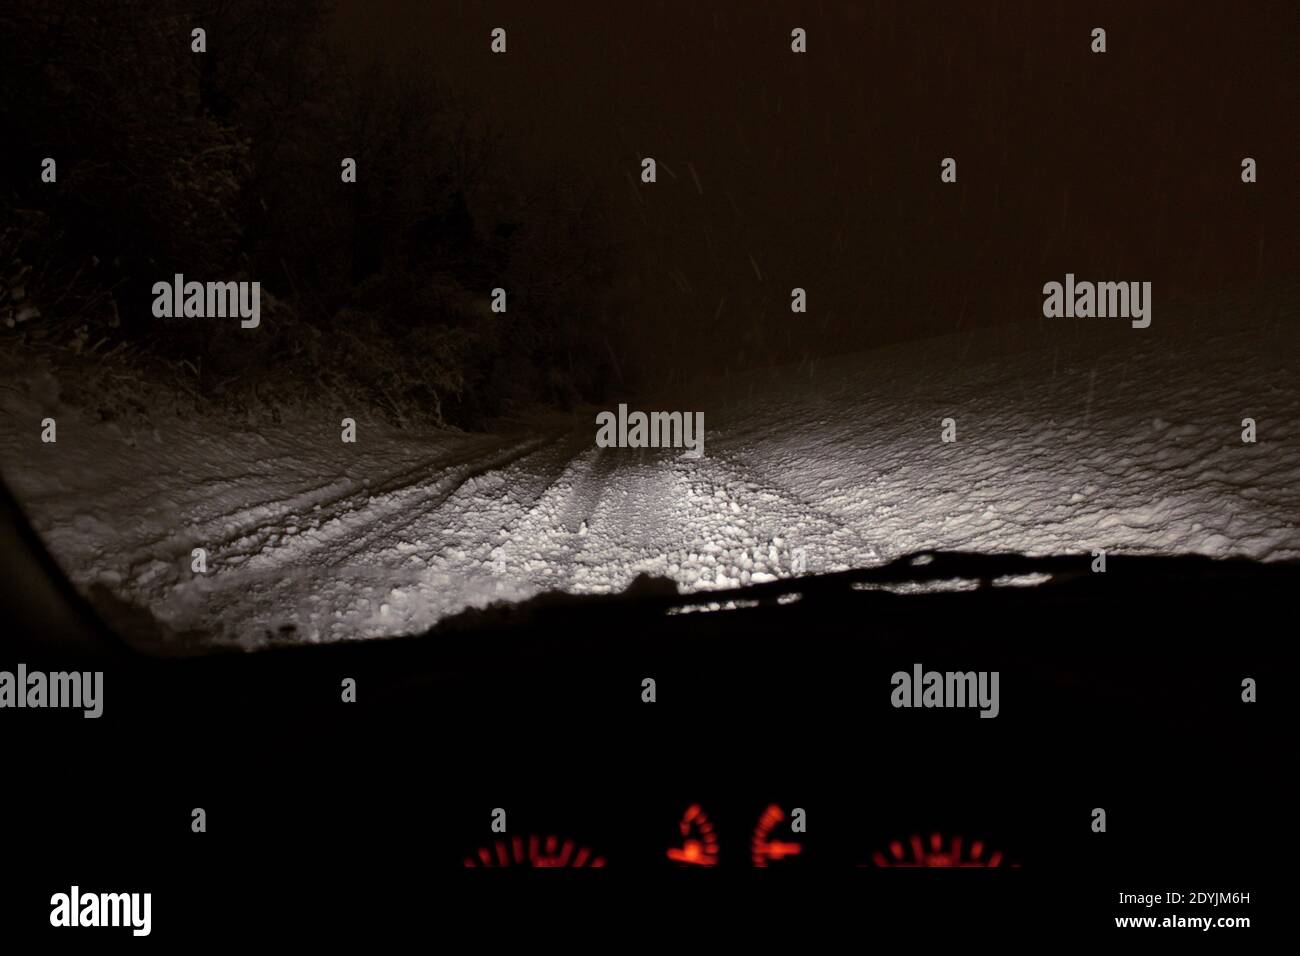 Strada coperta di neve vista dall'interno dell'auto. Foto Stock